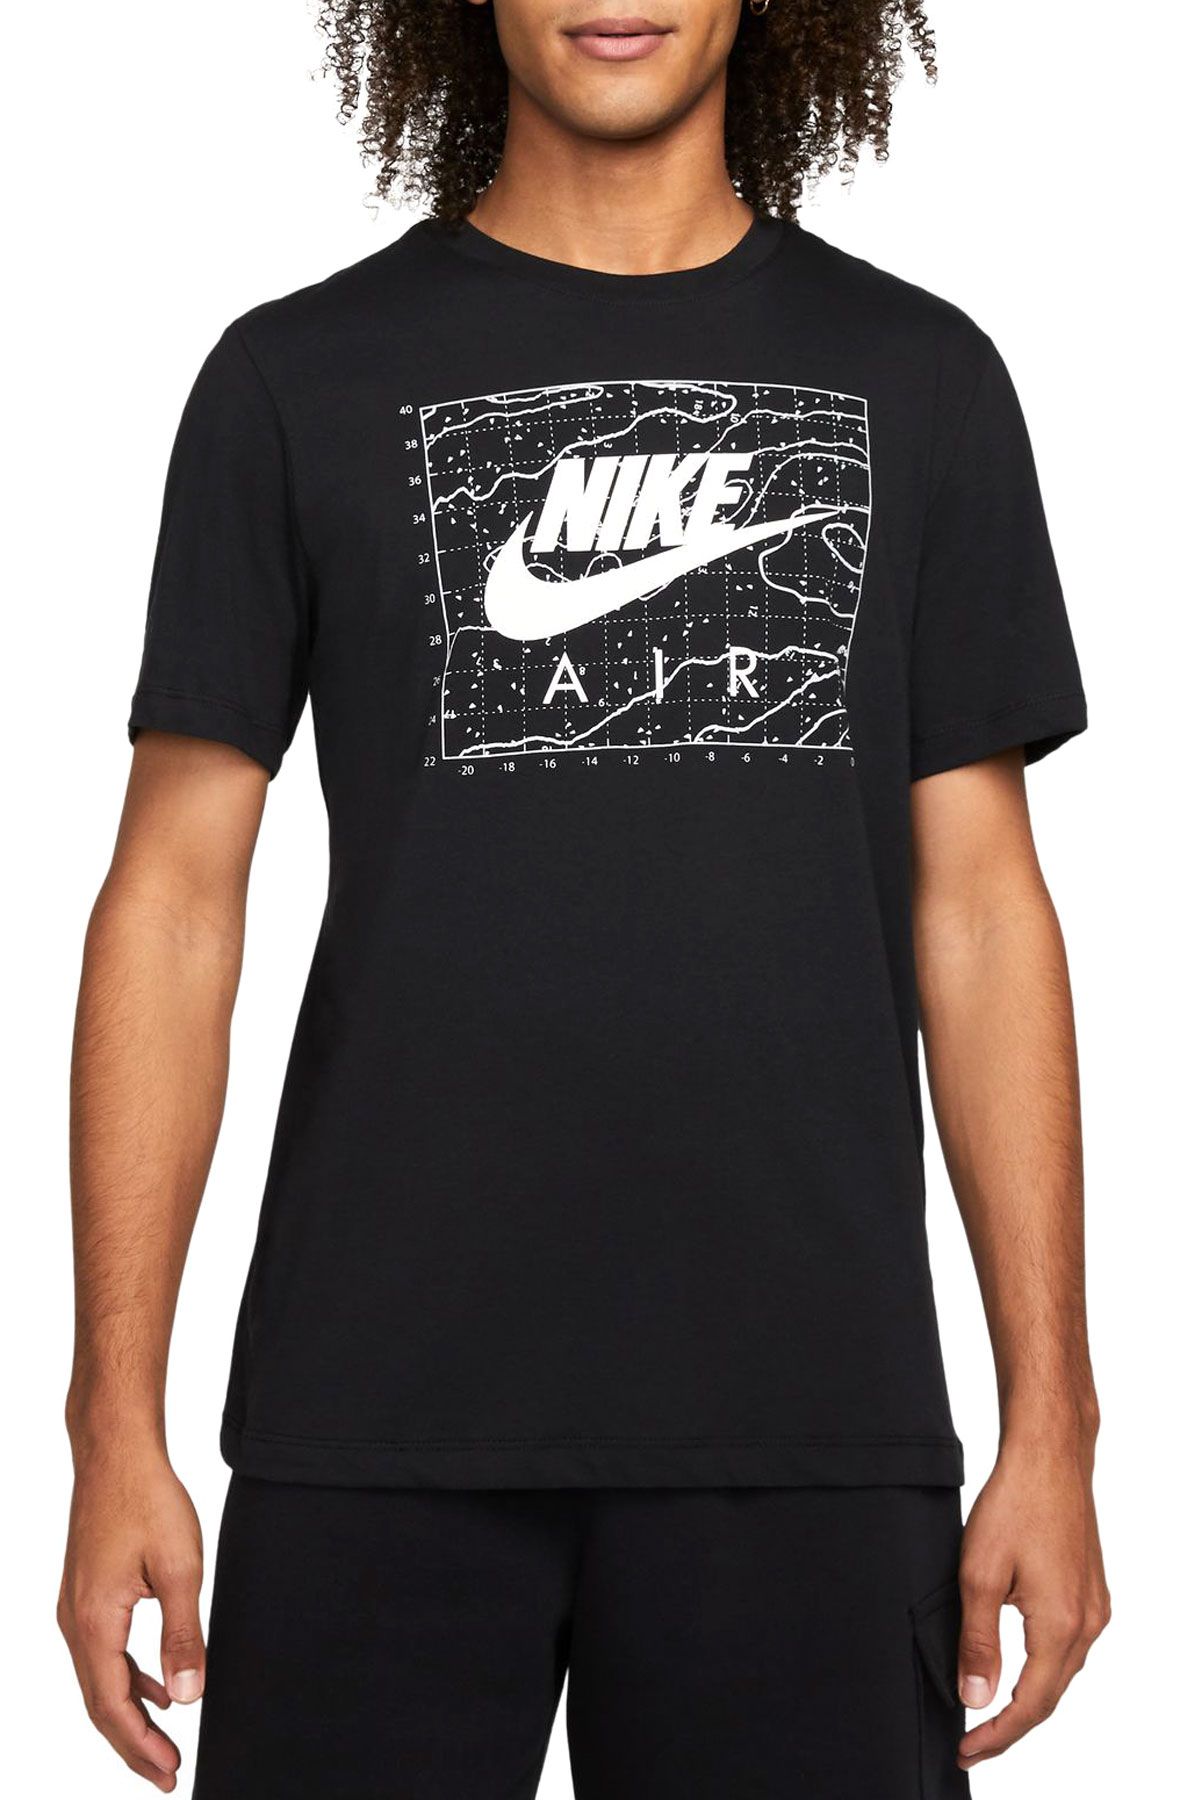 NIKE Air T-Shirt DM6339 010 - Shiekh